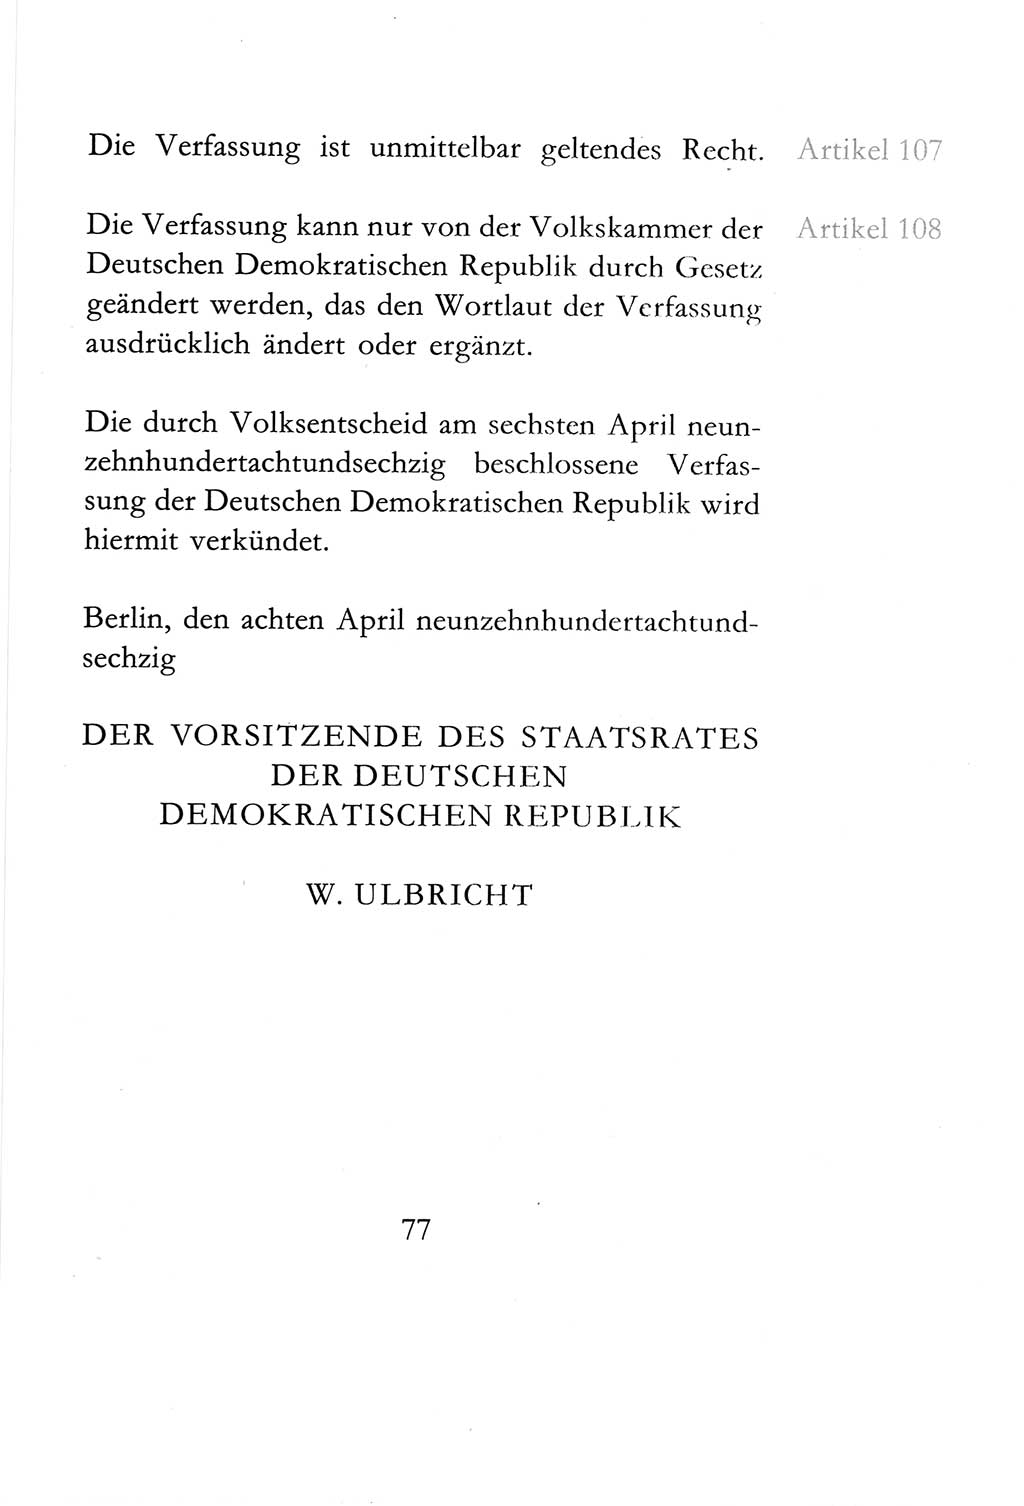 Verfassung der Deutschen Demokratischen Republik (DDR) vom 6. April 1968, Seite 77 (Verf. DDR 1968, S. 77)